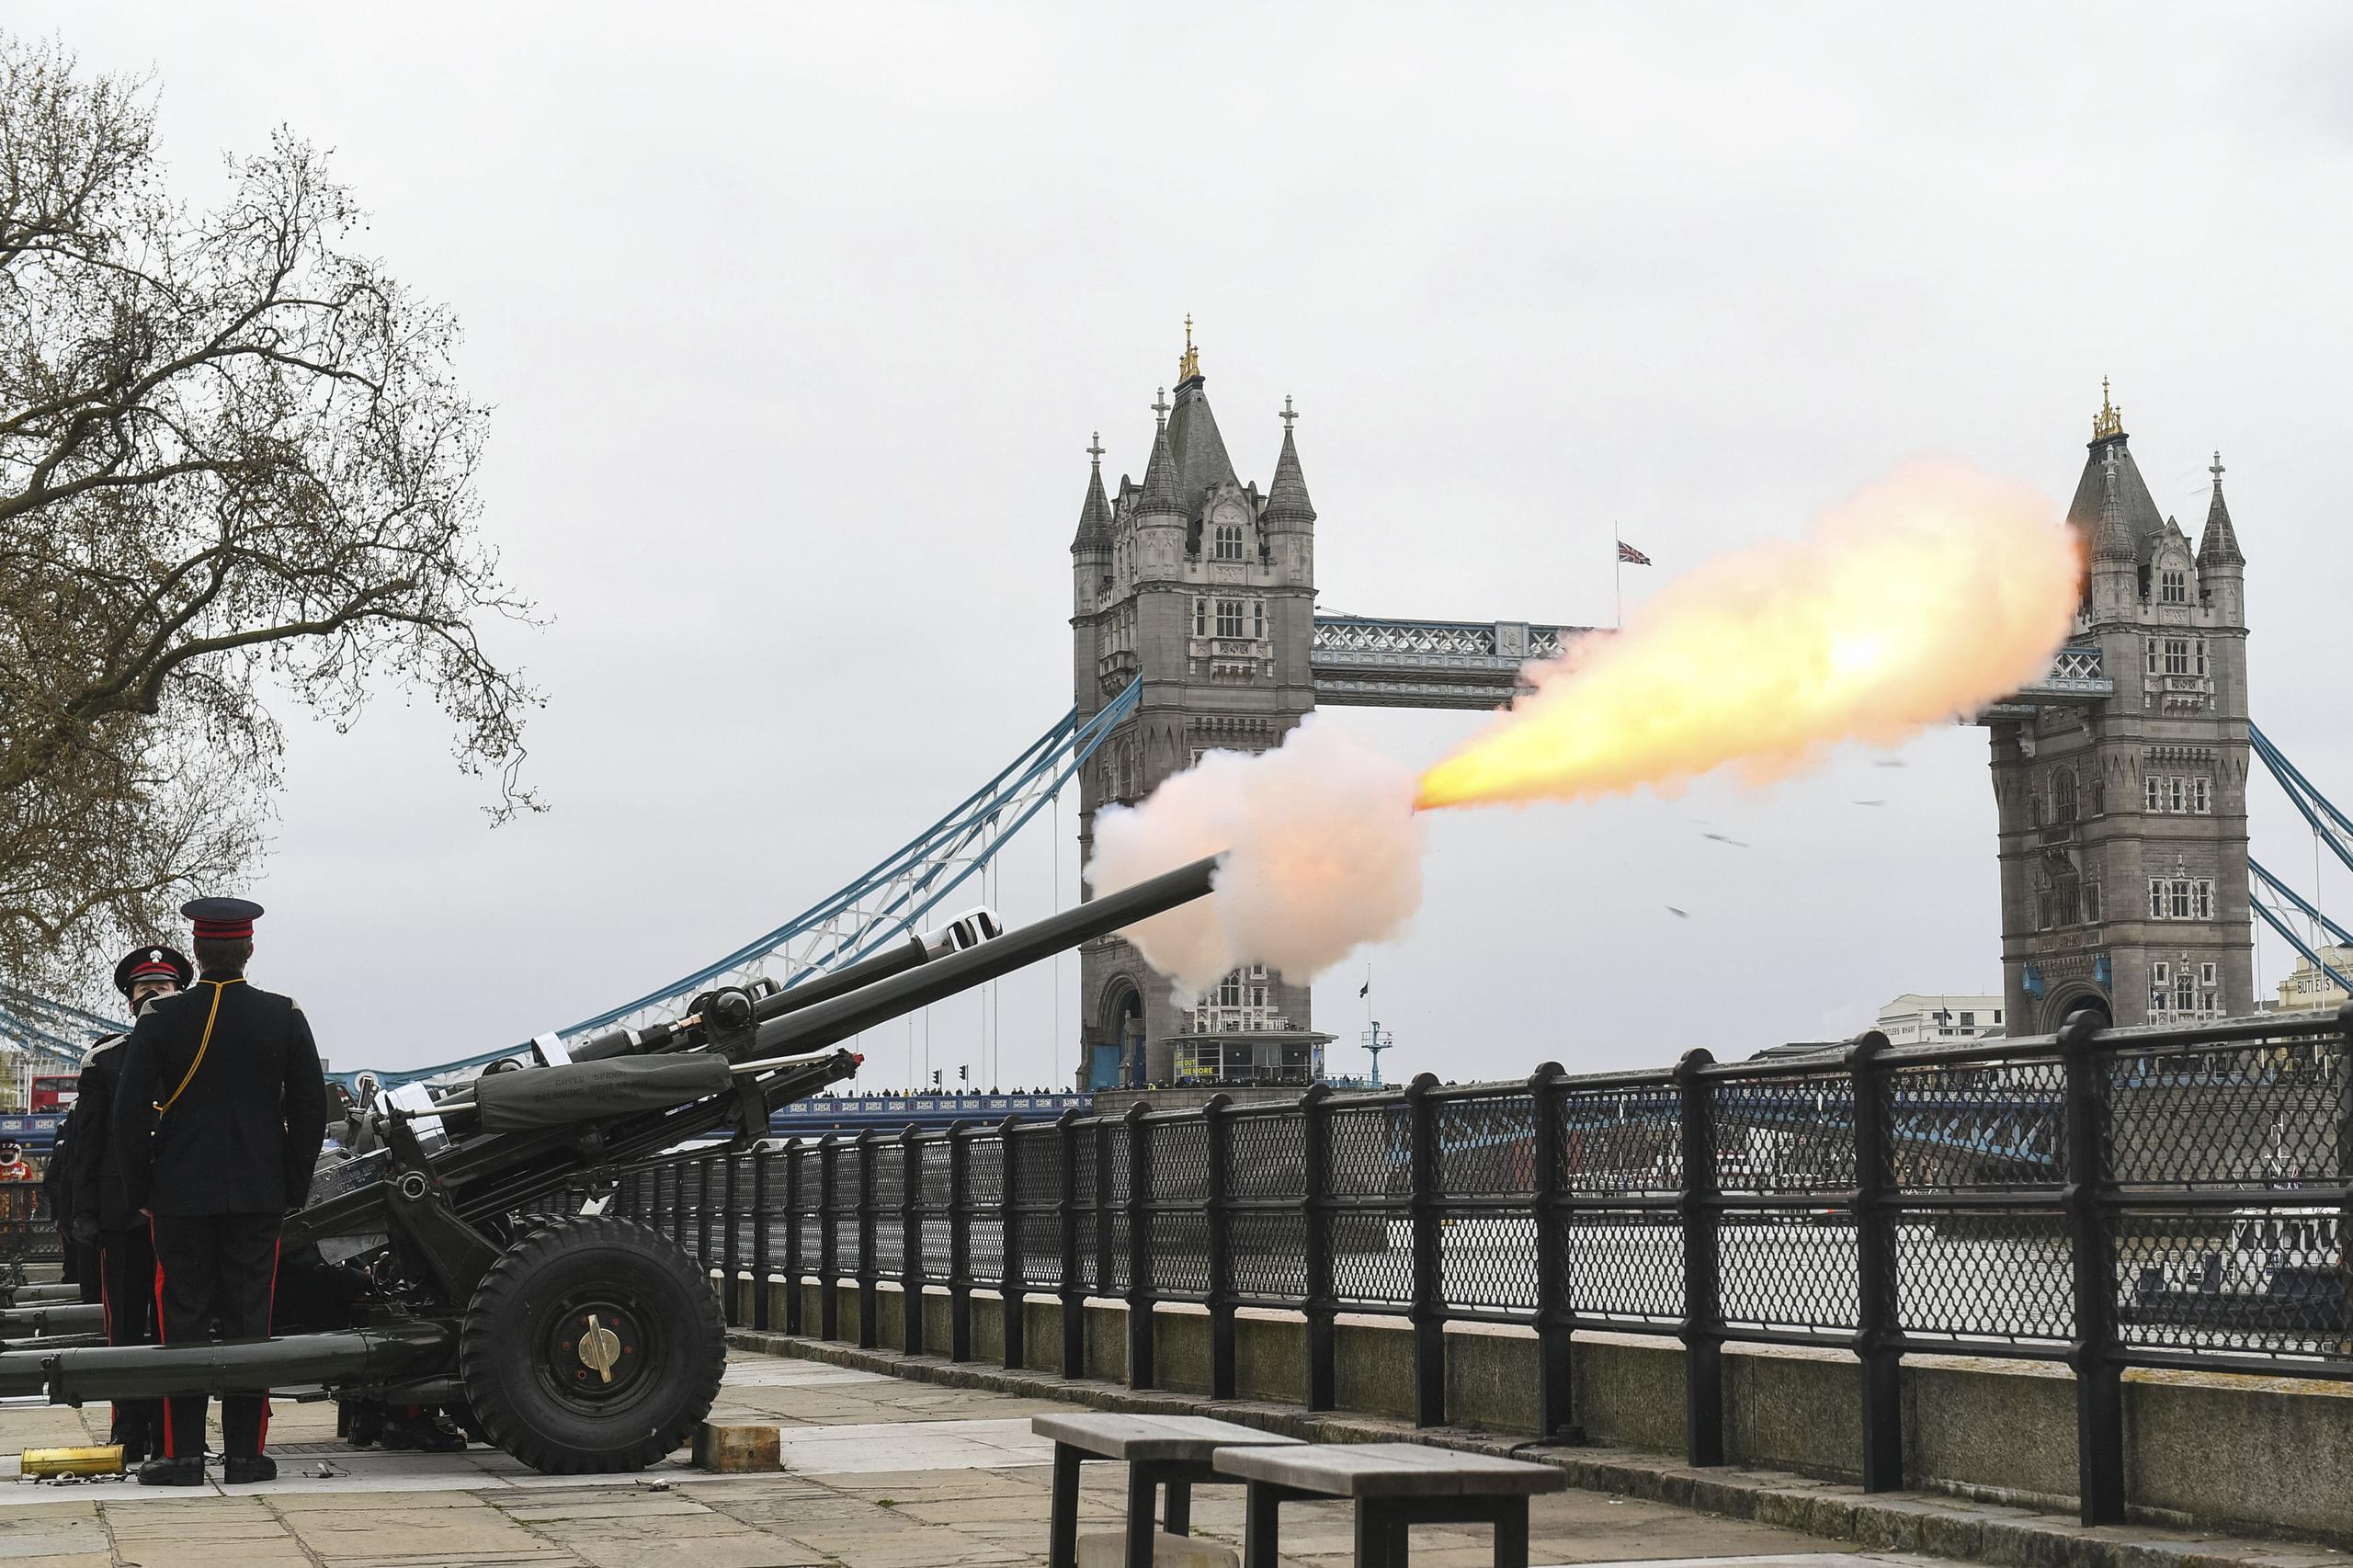 Miembros de la Honorable Compañía de Artillería disparó la ronda de 41 cañonazos junto a la Torre de Londres en memoria del príncipe Felipe.